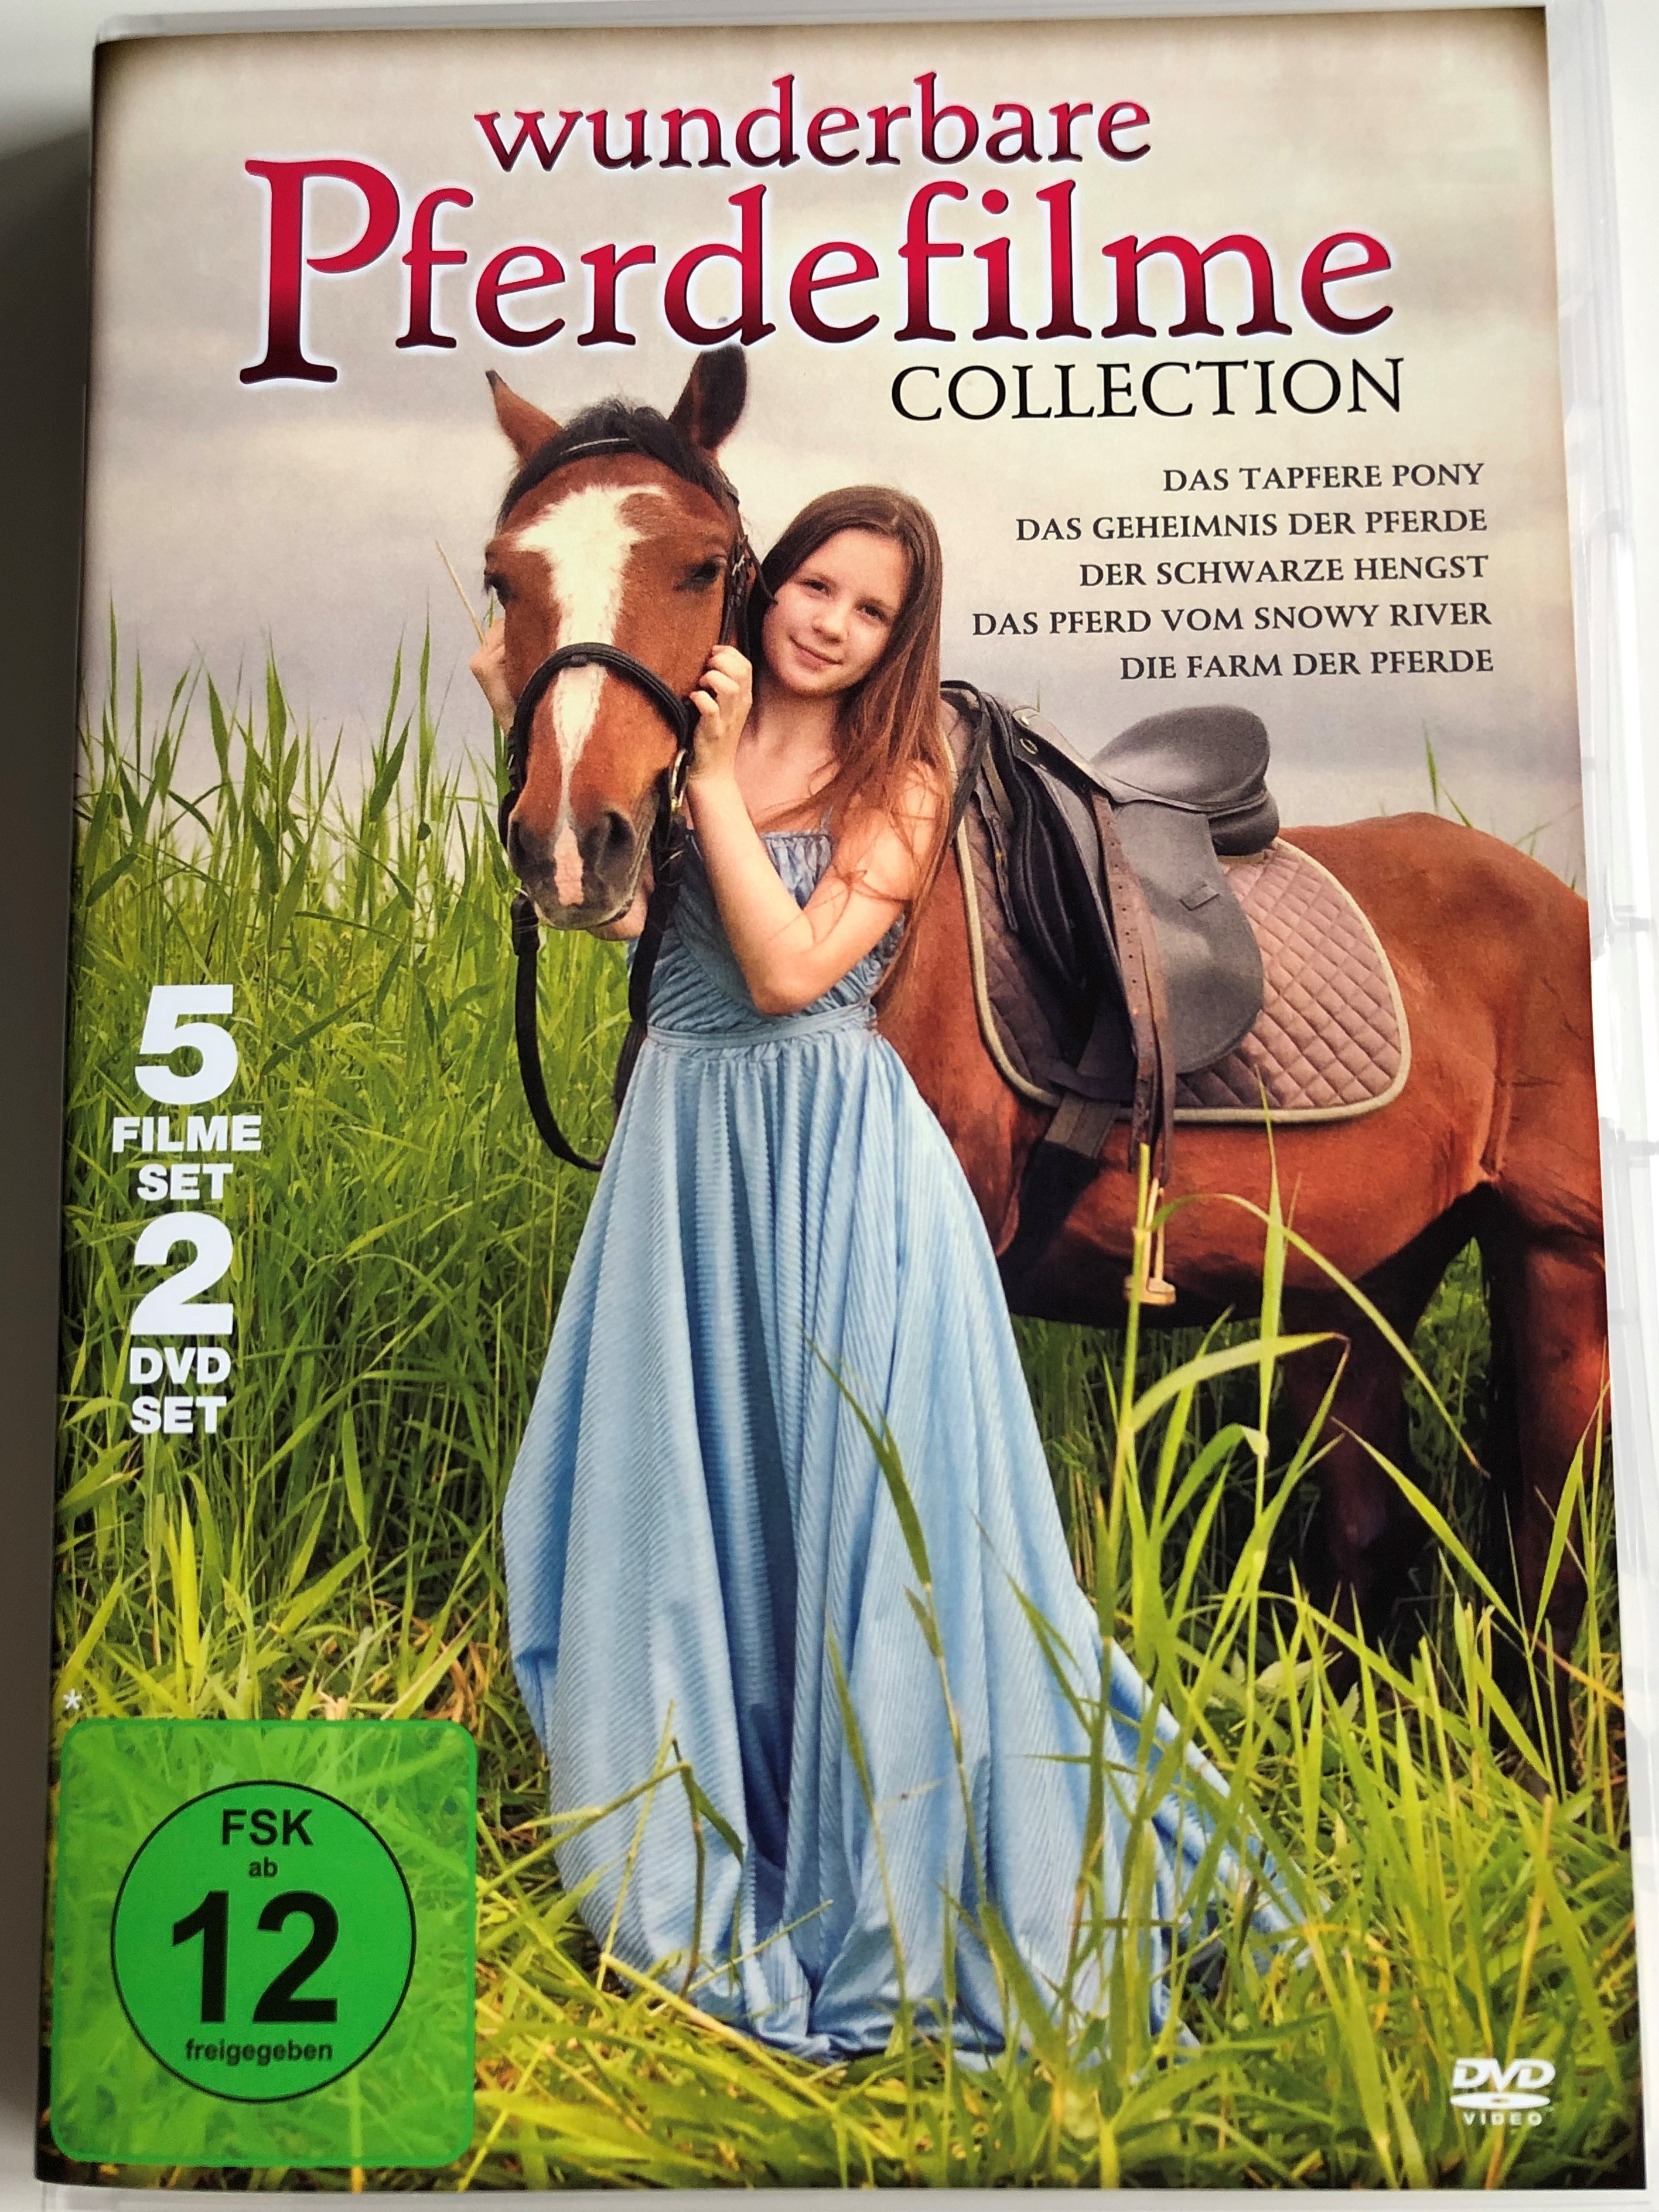 wunderbare-pferdefilme-collection-2-dvd-set-5-films-das-tapfere-pony-das-gehemnis-der-pferde-der-schwarze-hengst-das-pferd-vom-snowy-river-die-farm-der-pferde-1-.jpg